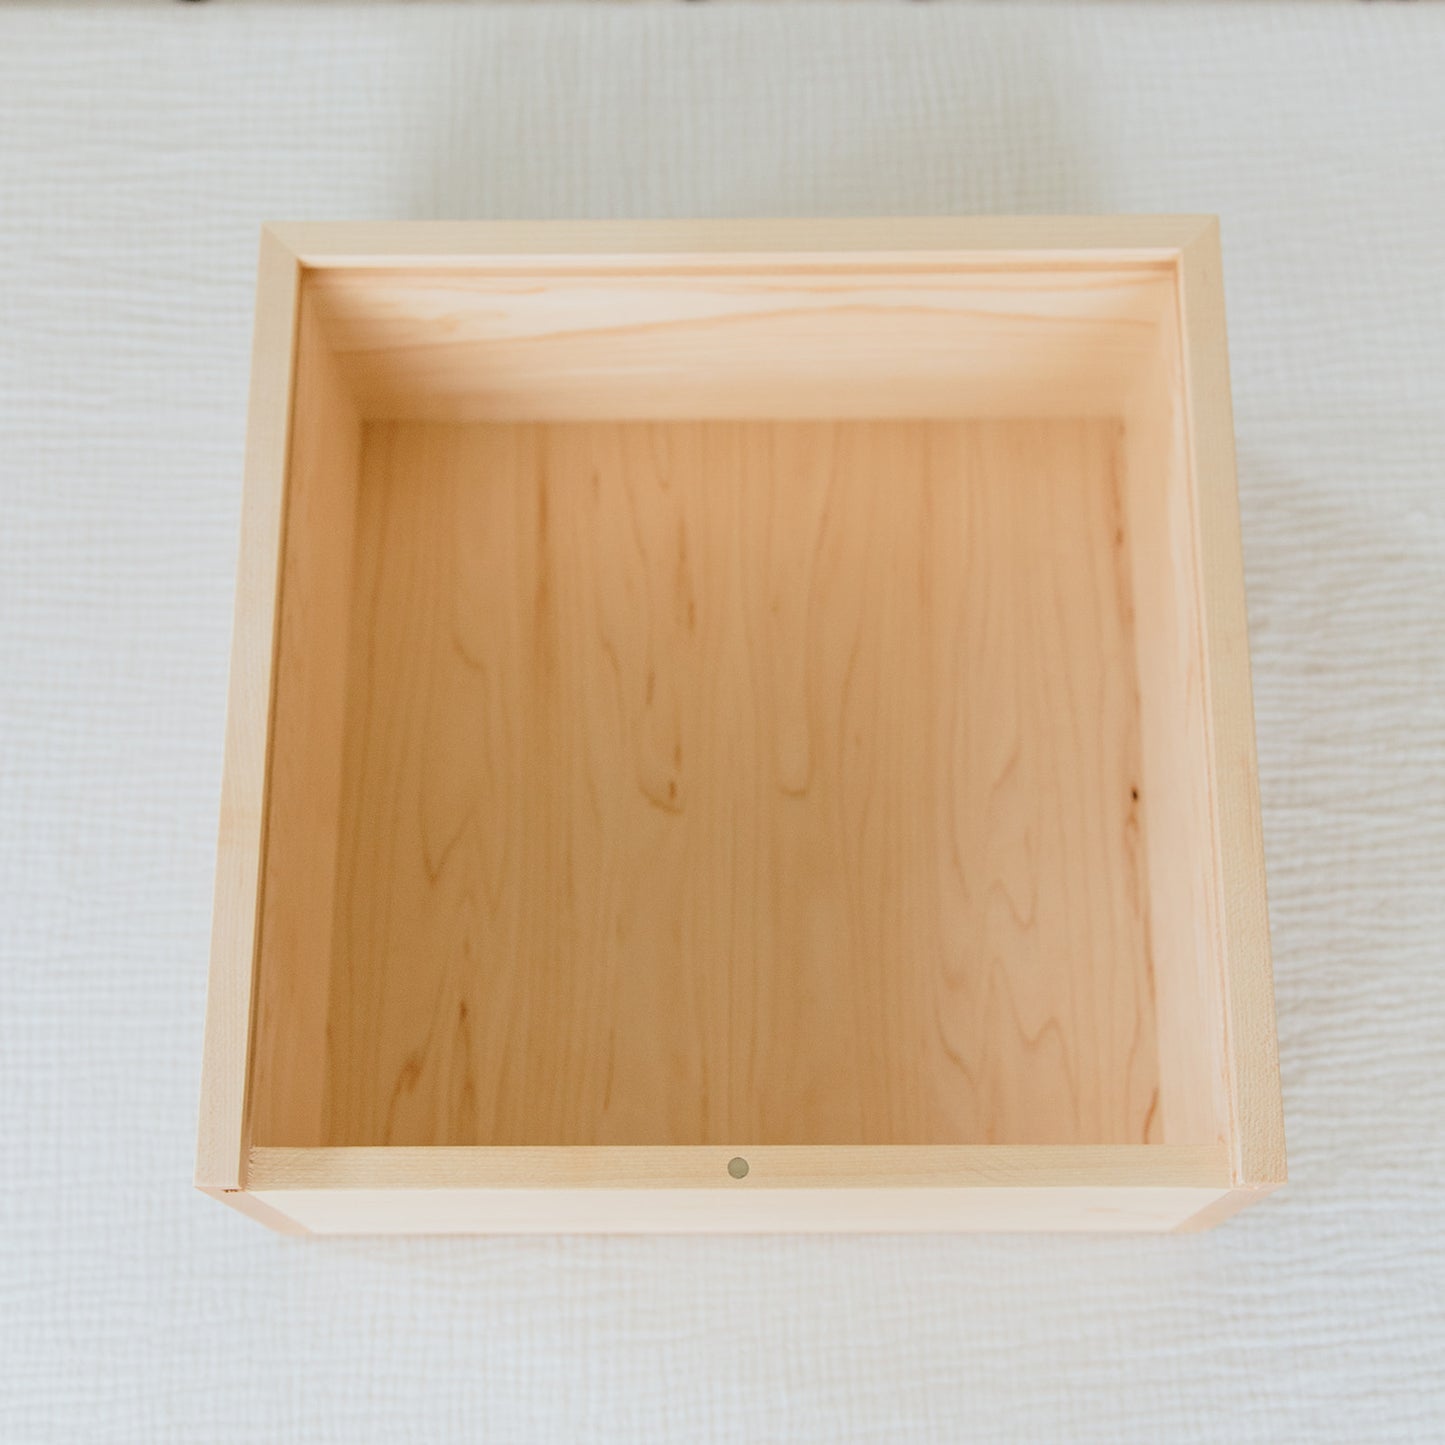 Grief Wooden Box Set